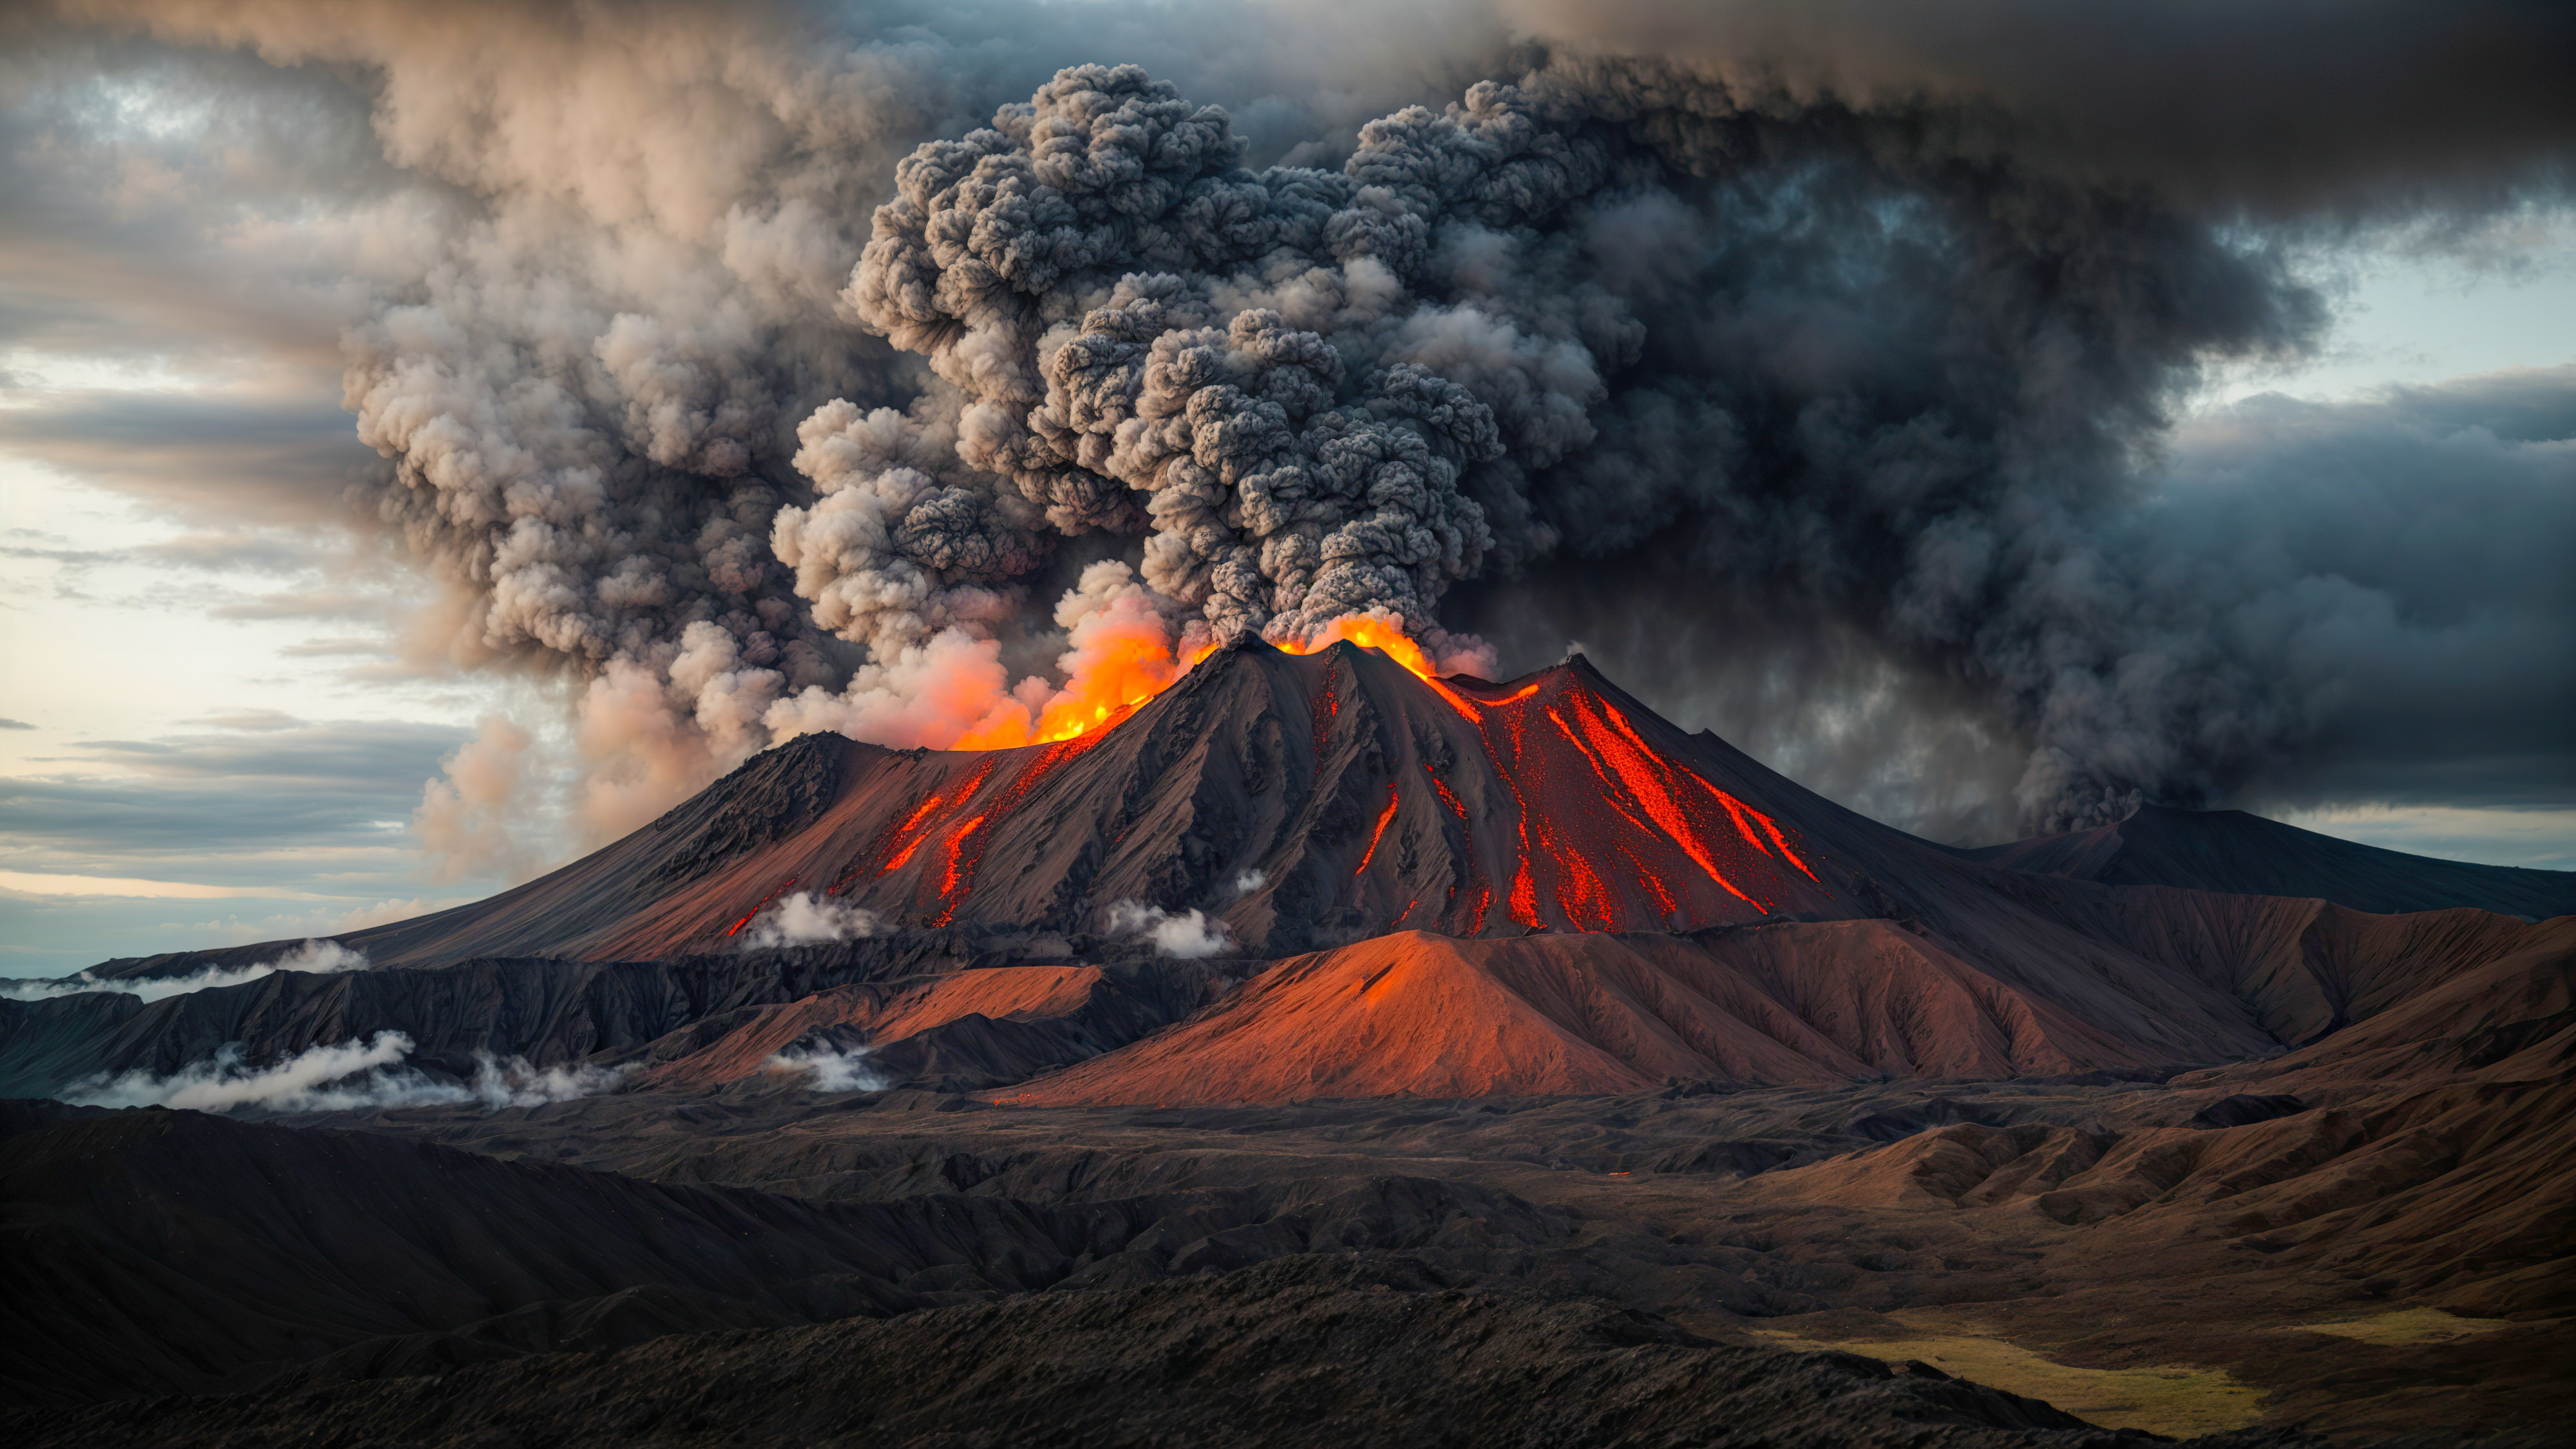 Vivez l'intensité d'une montagne volcanique avec un cratère fumant et une coulée de lave, capturée dans ce fond d'écran sombre sous un ciel nuageux.